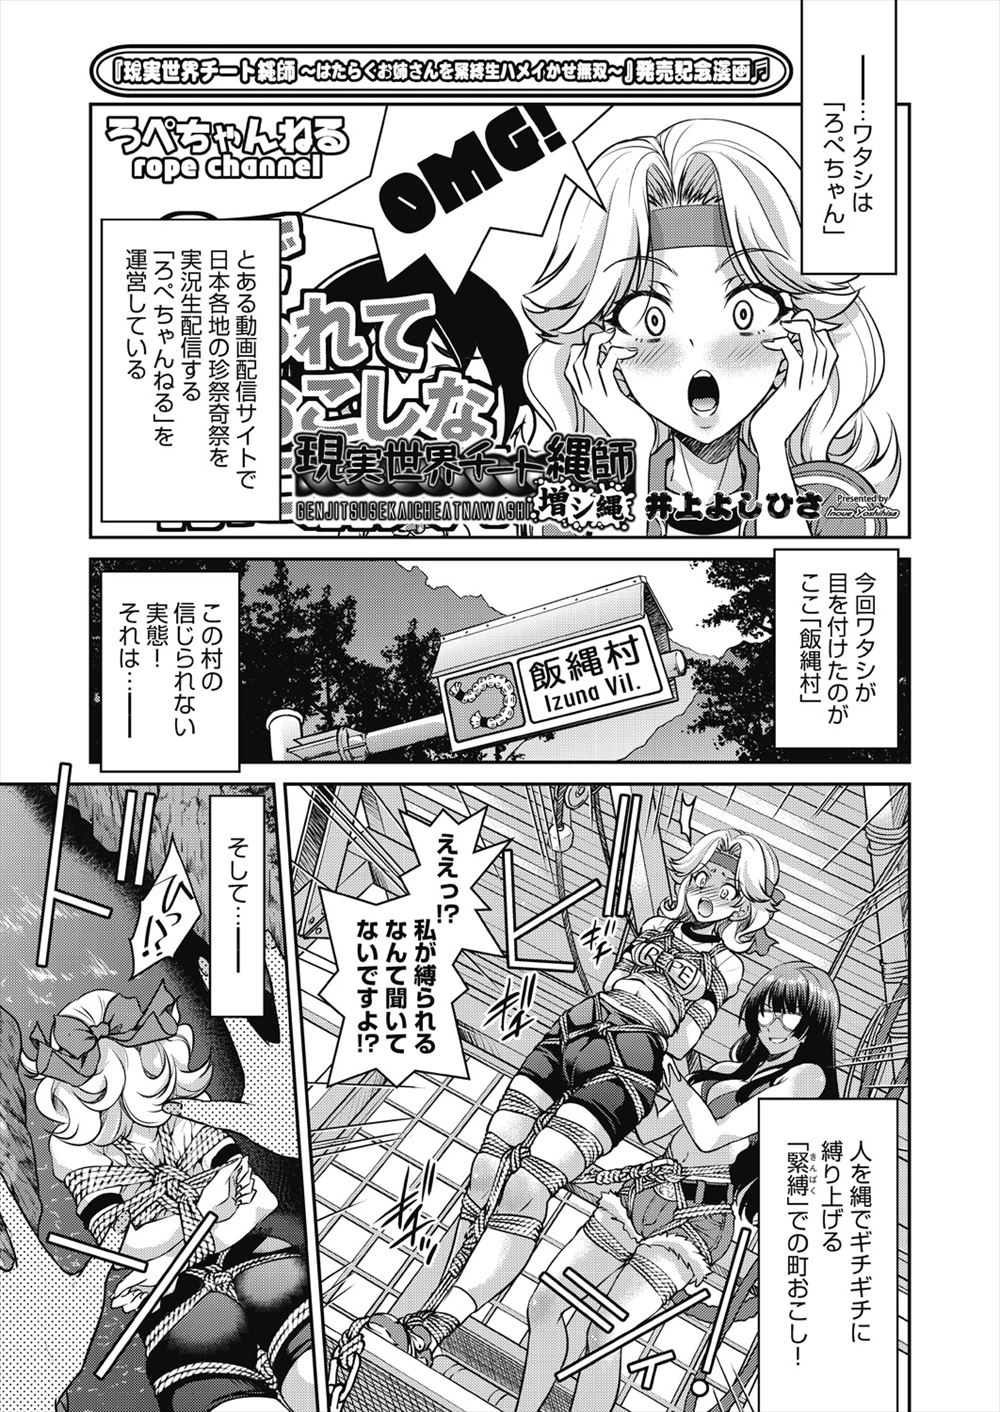 【エロ漫画】日本のかわったお祭りを動画配信している女子が、緊縛で町おこしをしているという街でギチギチに緊縛されたままバンジージャンプさせられ、宙吊りになったまま二穴中出しレイプされるｗ